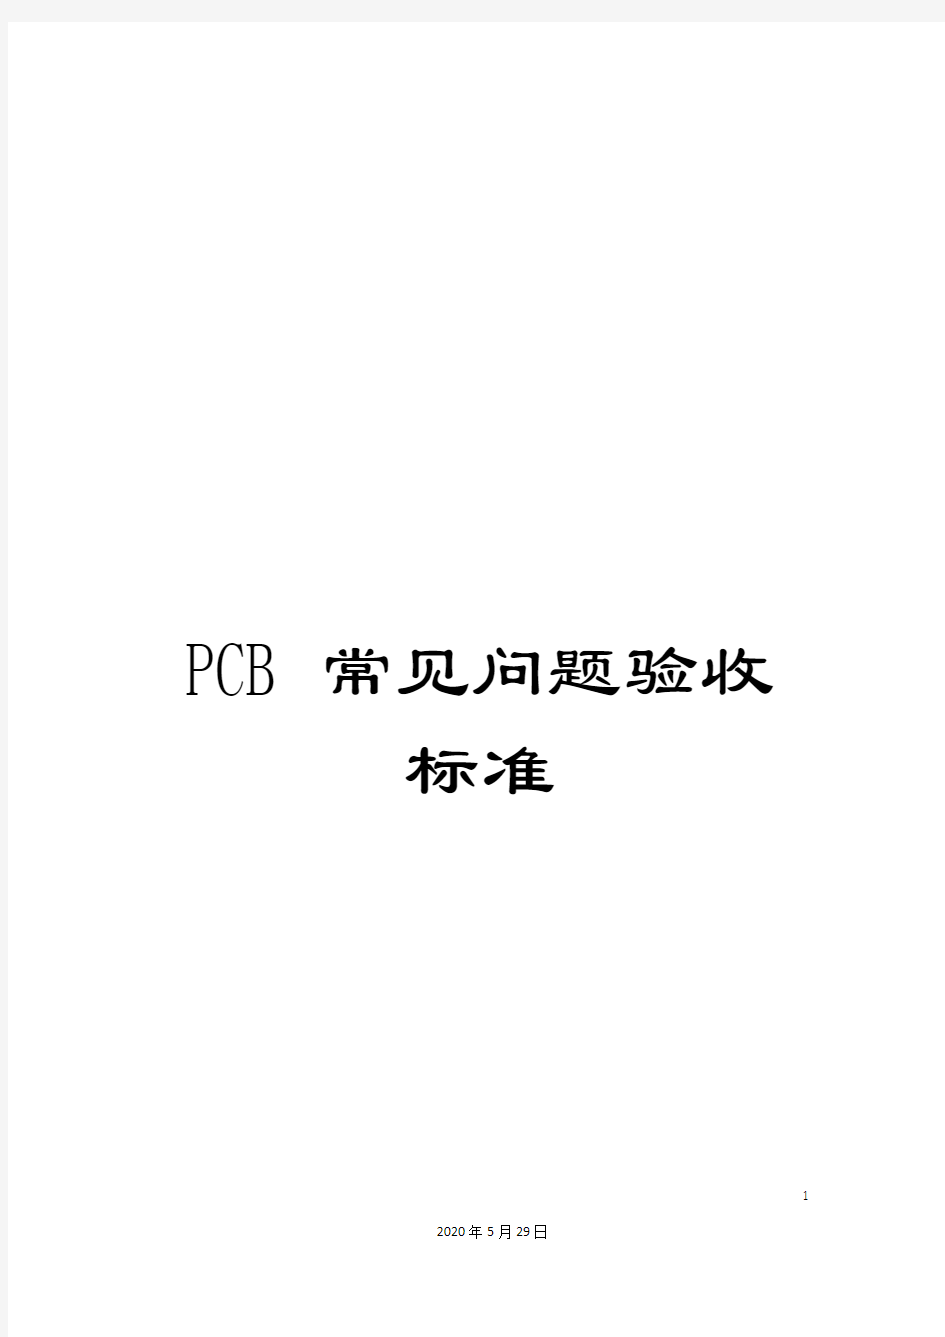 PCB常见问题验收标准